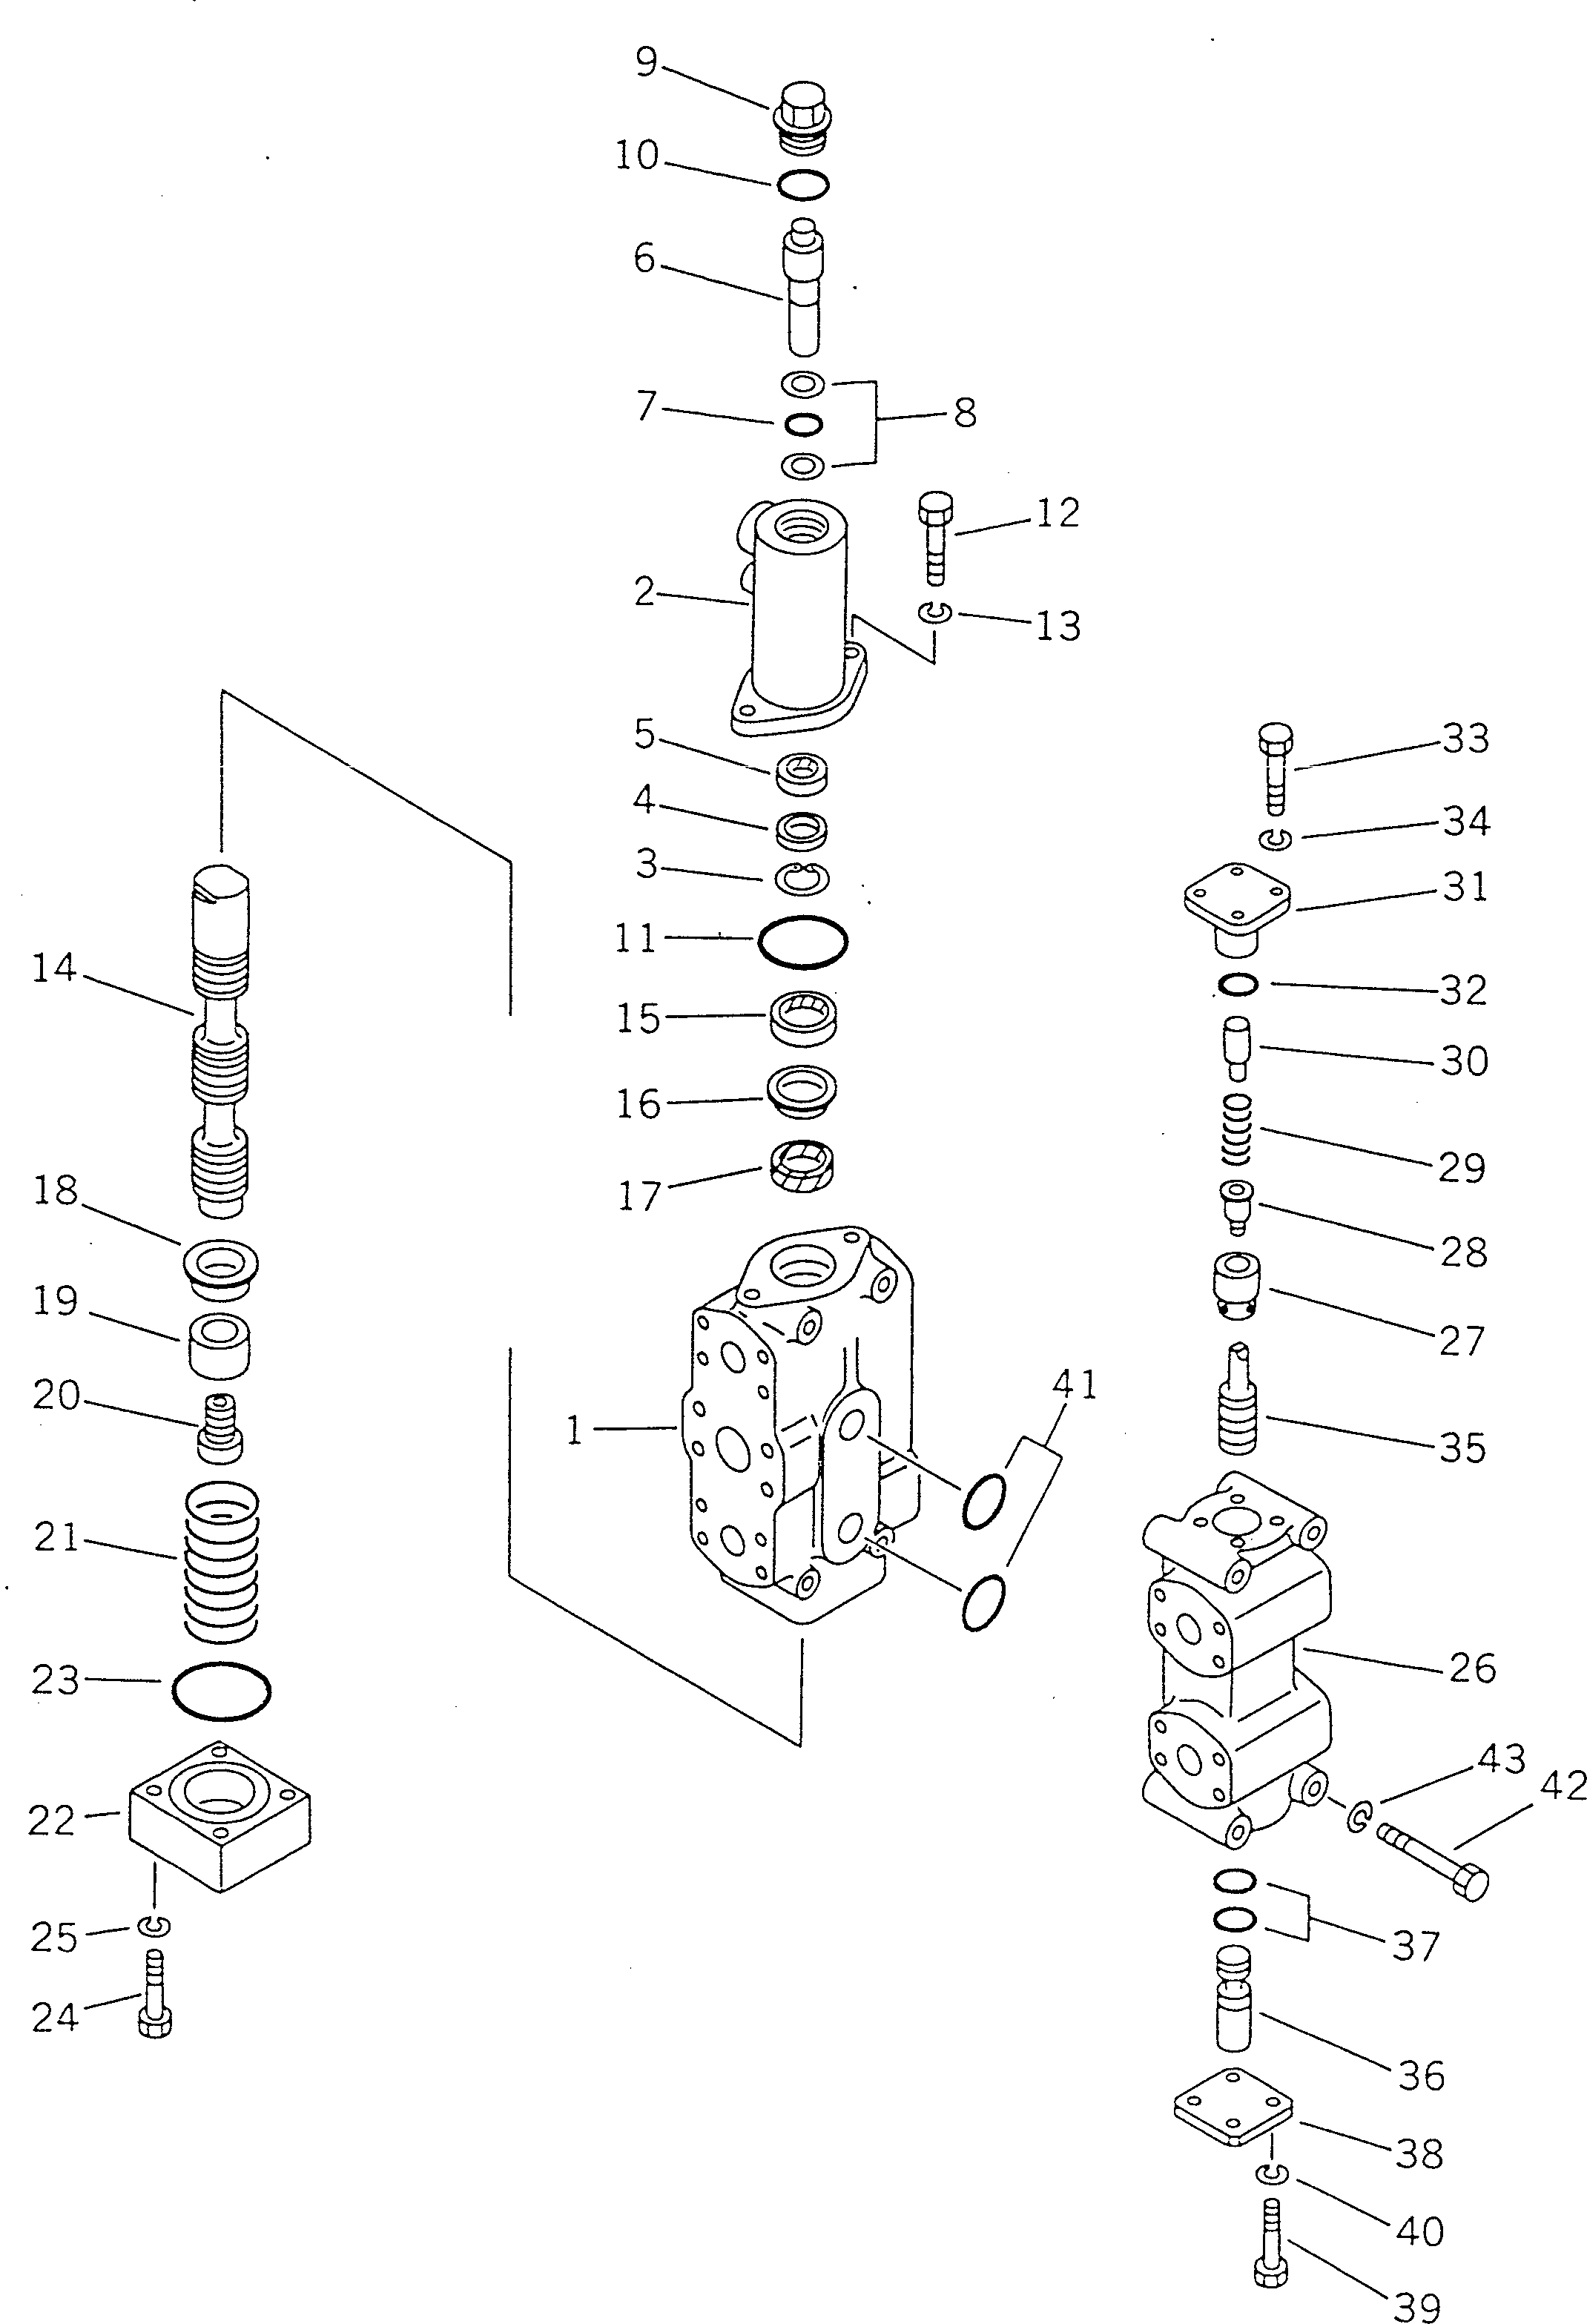 260. RIPPER SELECTOR VALVE [7521] - Komatsu part D155A-2 S/N 50001-UP (S6D155-4 Eng. Installed) [d155a-2c]